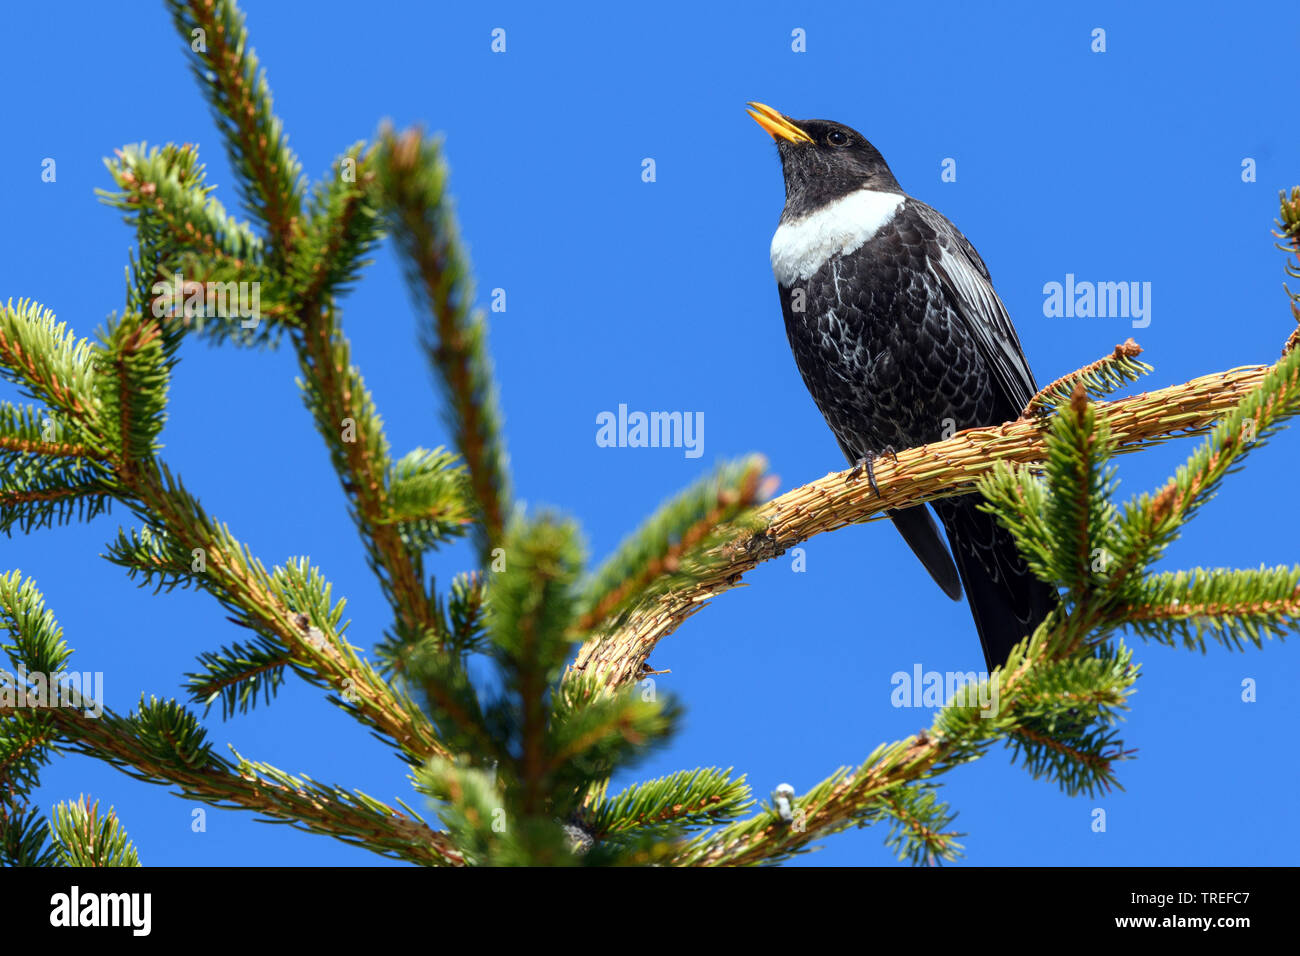 chat-shrike (Lanioturdus torquatus, Turdus torquatus), male singing on a spruce, Austria, Tyrol Stock Photo